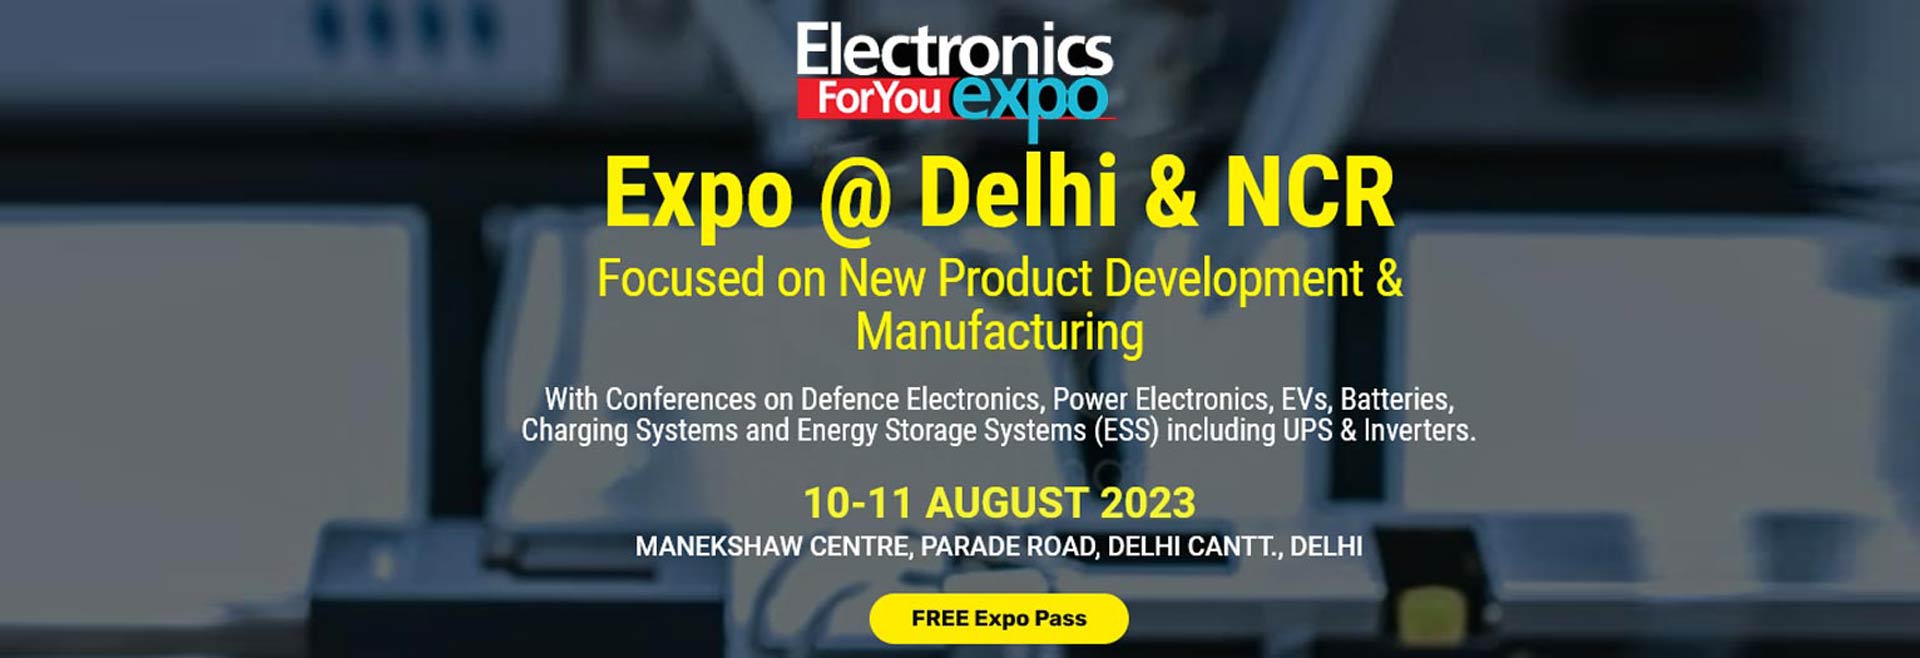 Electronics For You Expo @ Delhi & NCR, New Delhi, Delhi, India